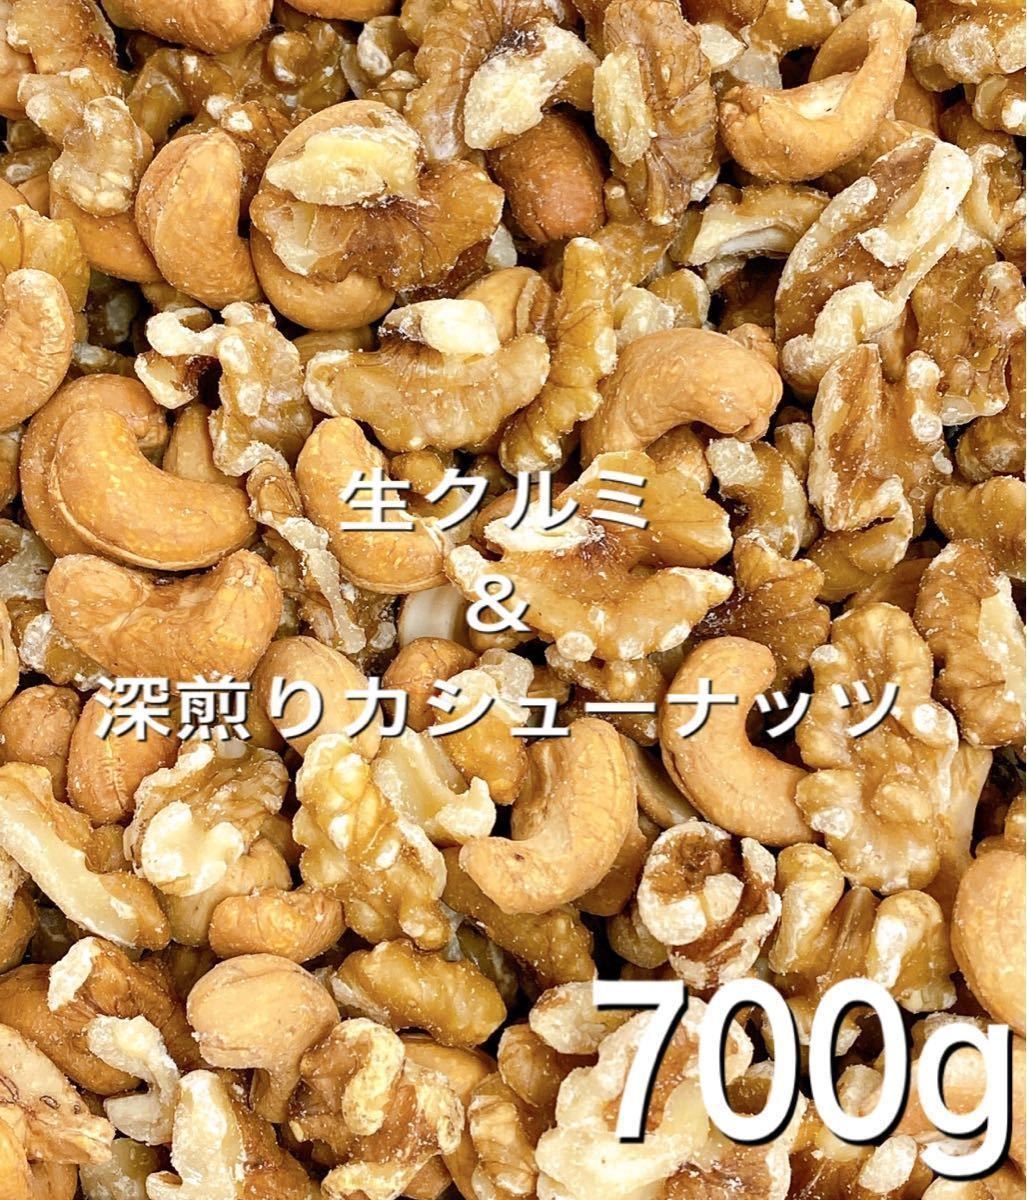 *2 kind mixed nuts * raw walnut deep .. cashew 700g